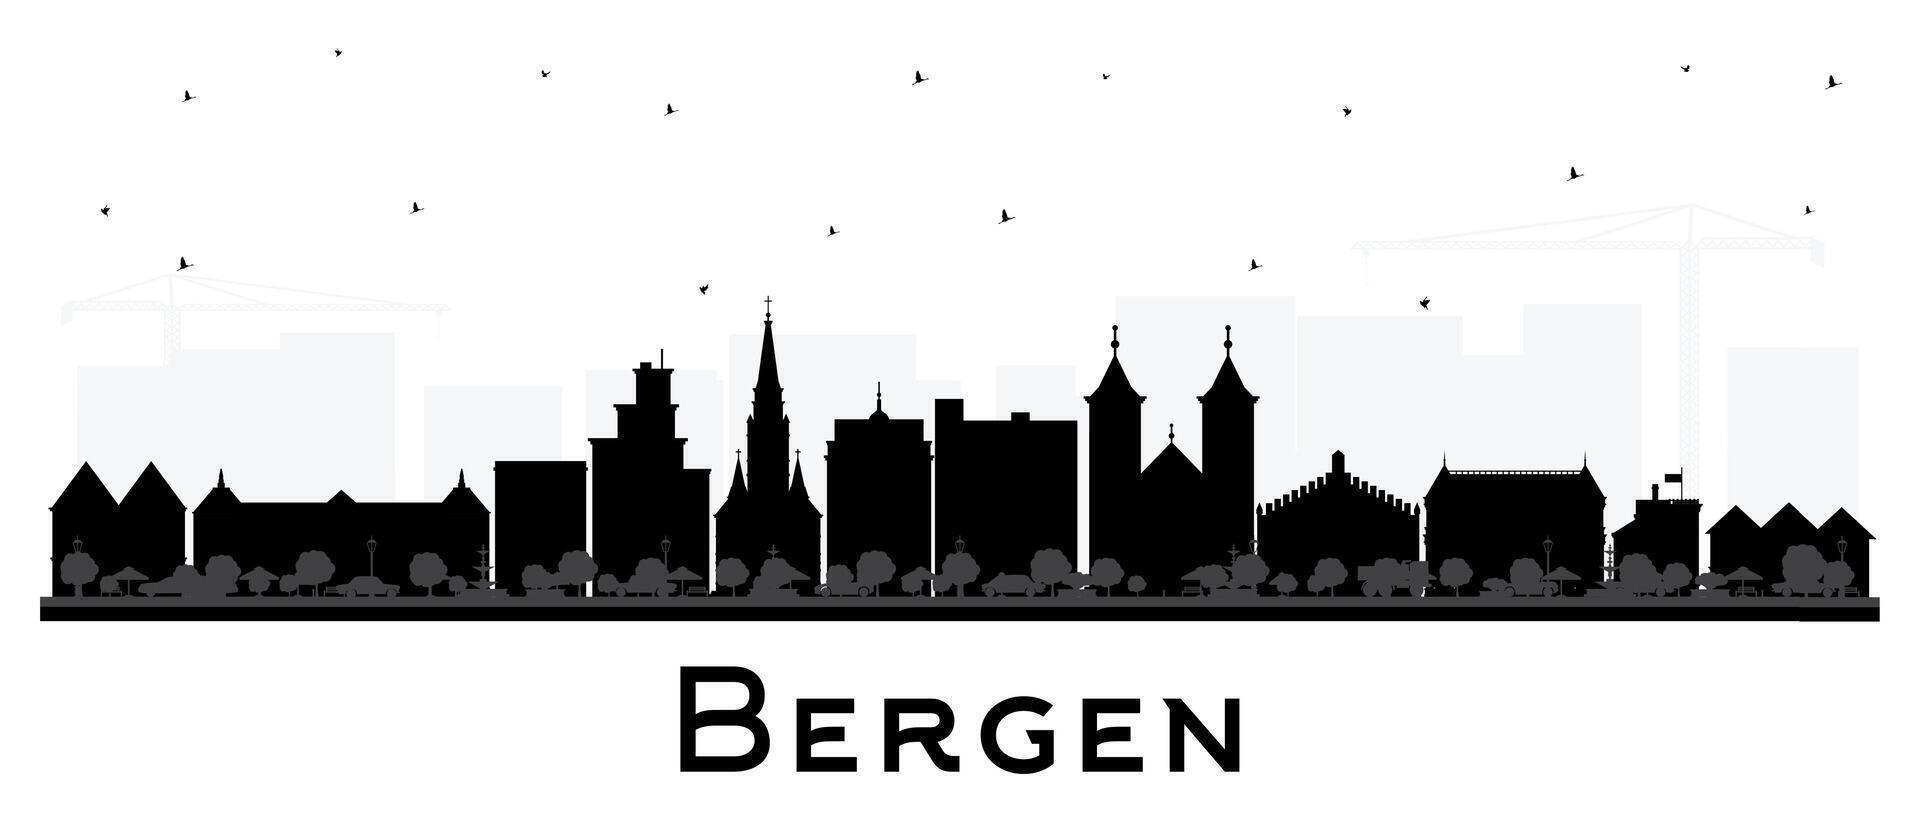 Bergen Norge stad horisont silhuett med svart byggnader isolerat på vit. Bergen stadsbild med landmärken. företag resa och turism begrepp med historisk arkitektur. vektor